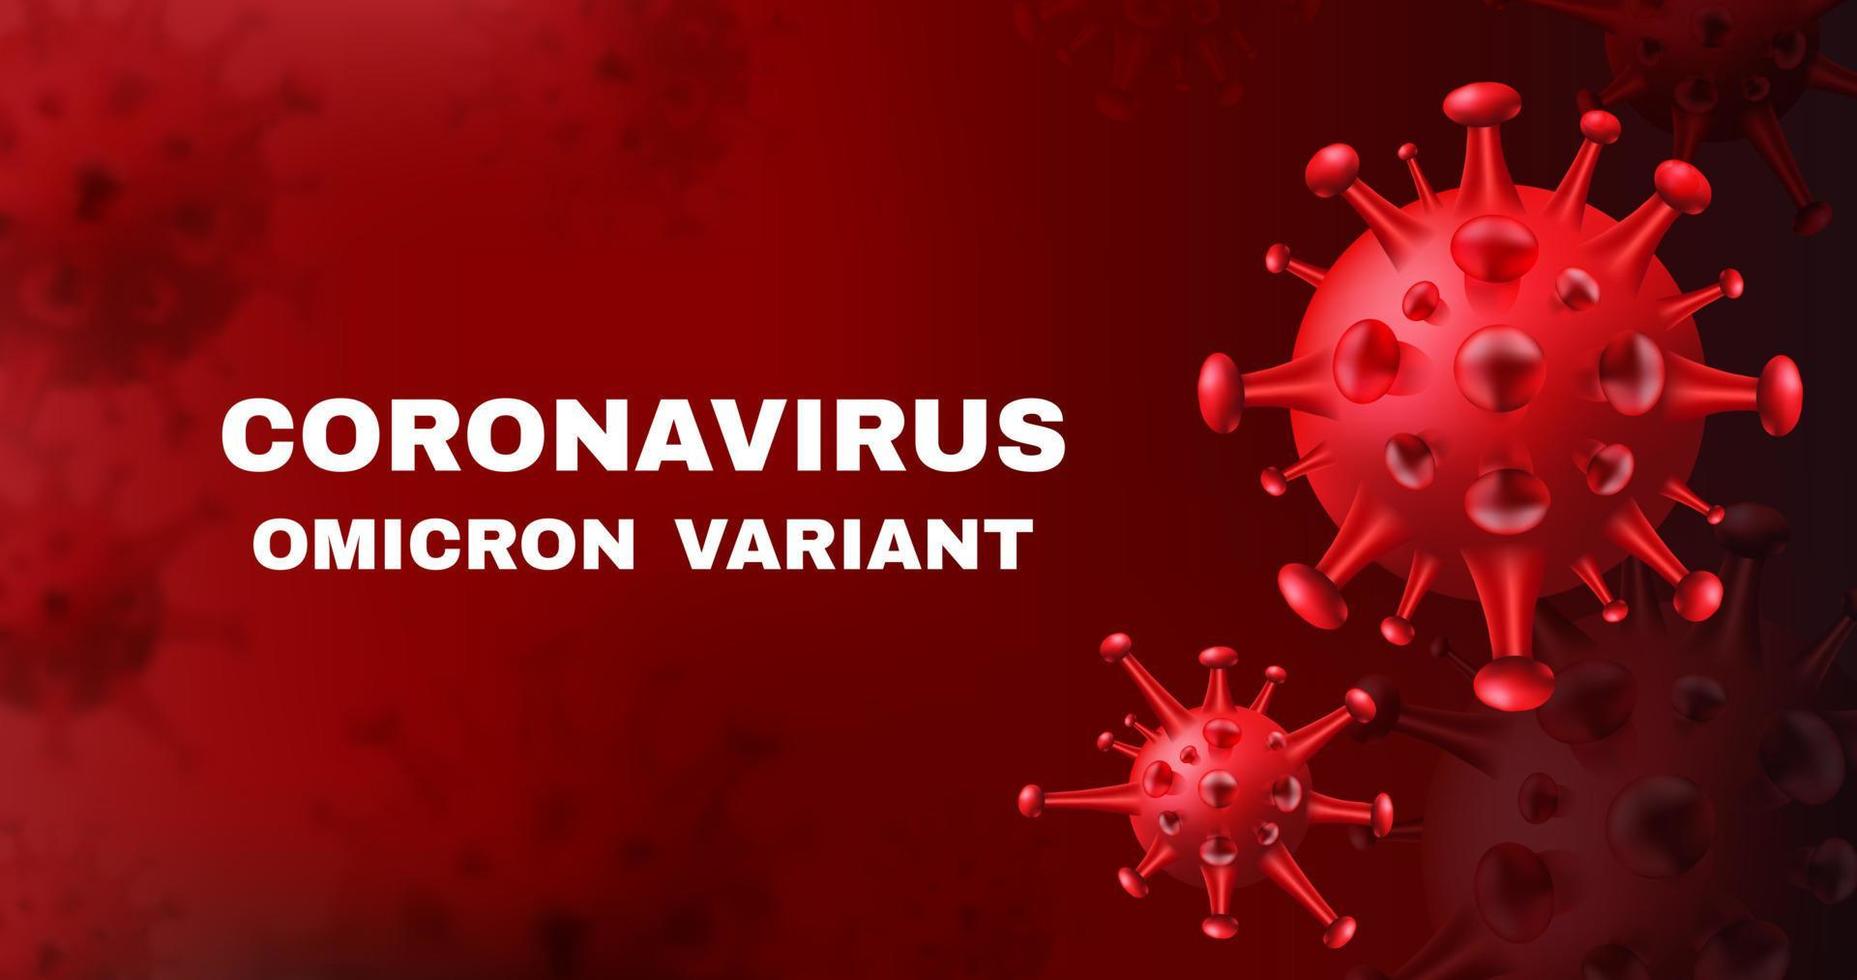 nueva variante del coronavirus - omicron. Fondo de vector covid-10 con células de virus realistas.